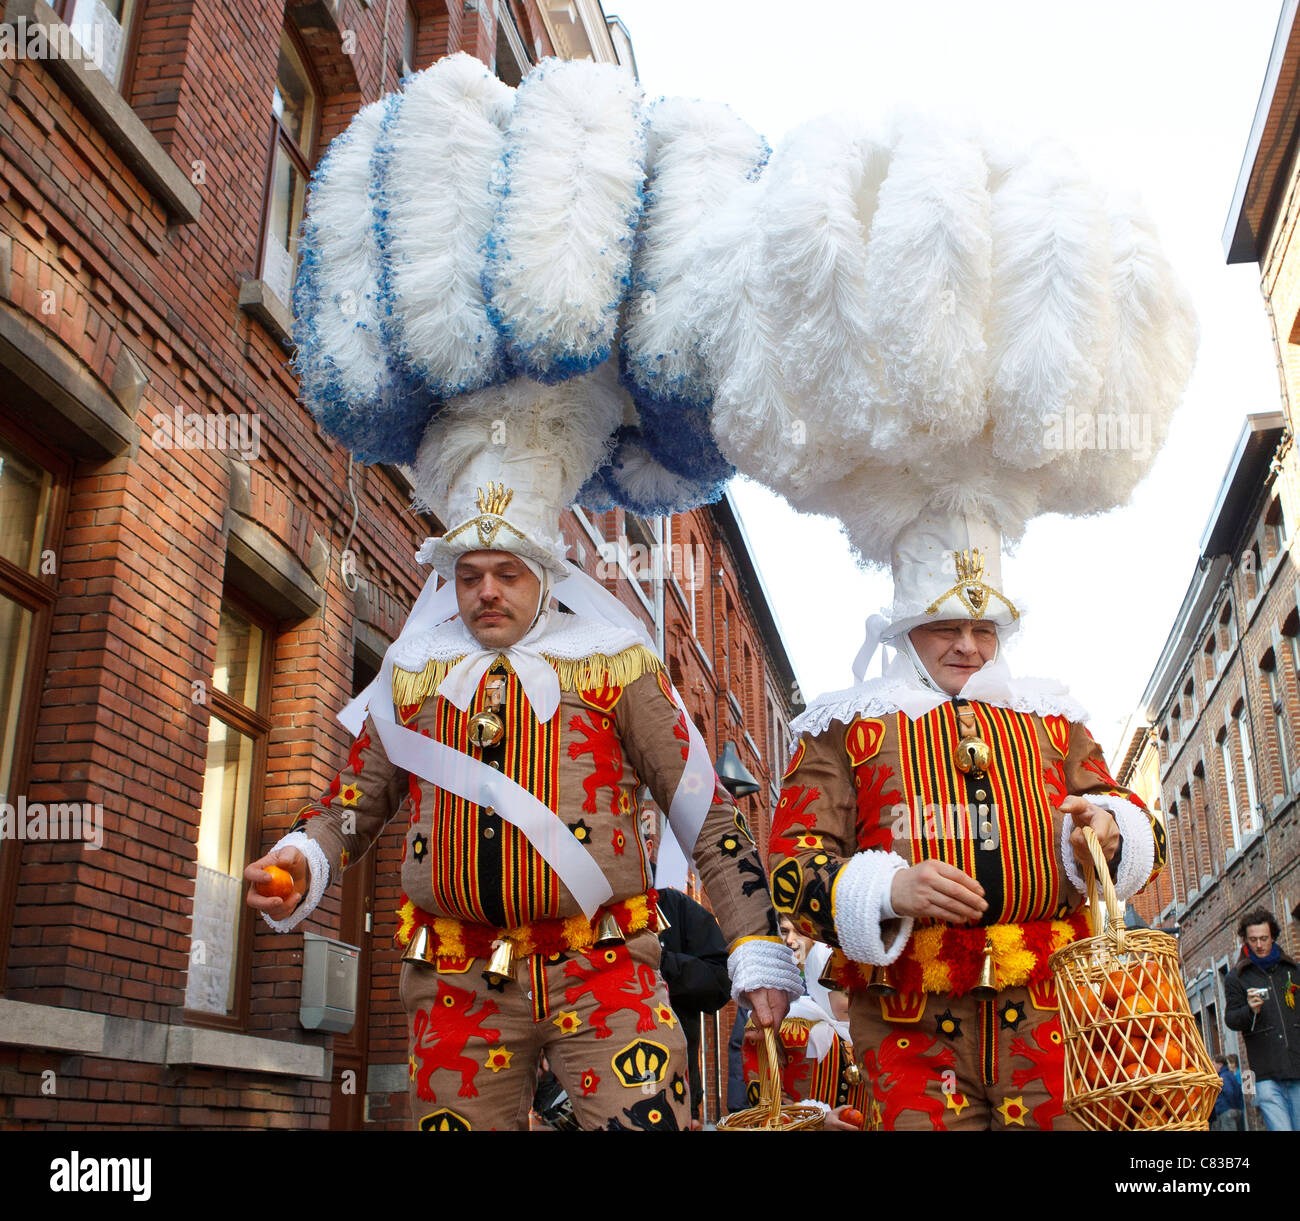 Carnaval de Binche Belgique festival participants chef traditionnel-dress costume costumes personnes afficher couleur couleur masque coloré Banque D'Images